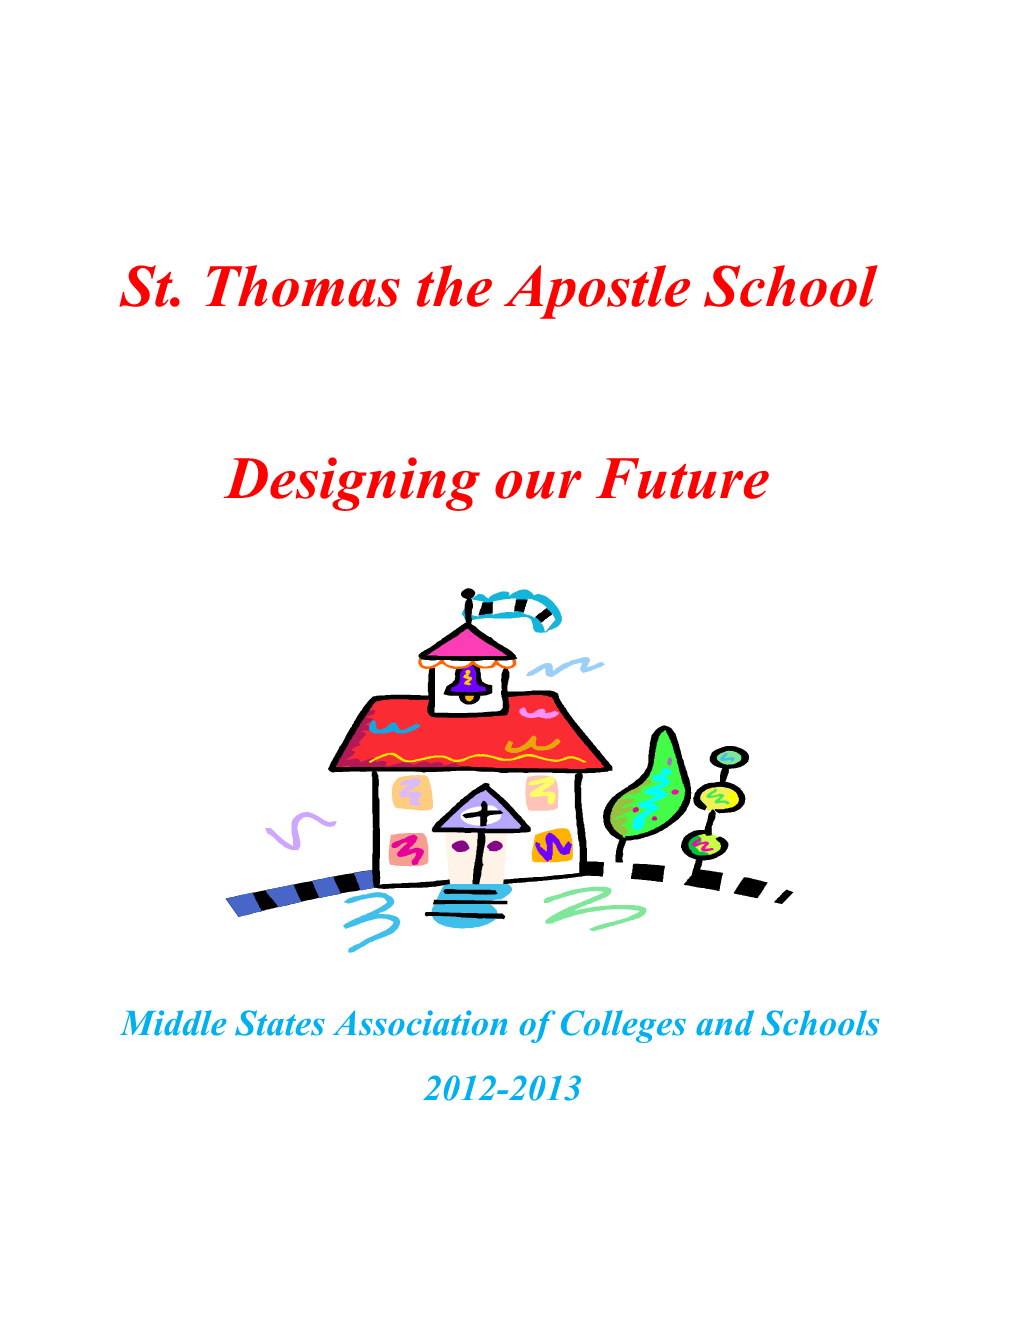 St. Thomas the Apostle School